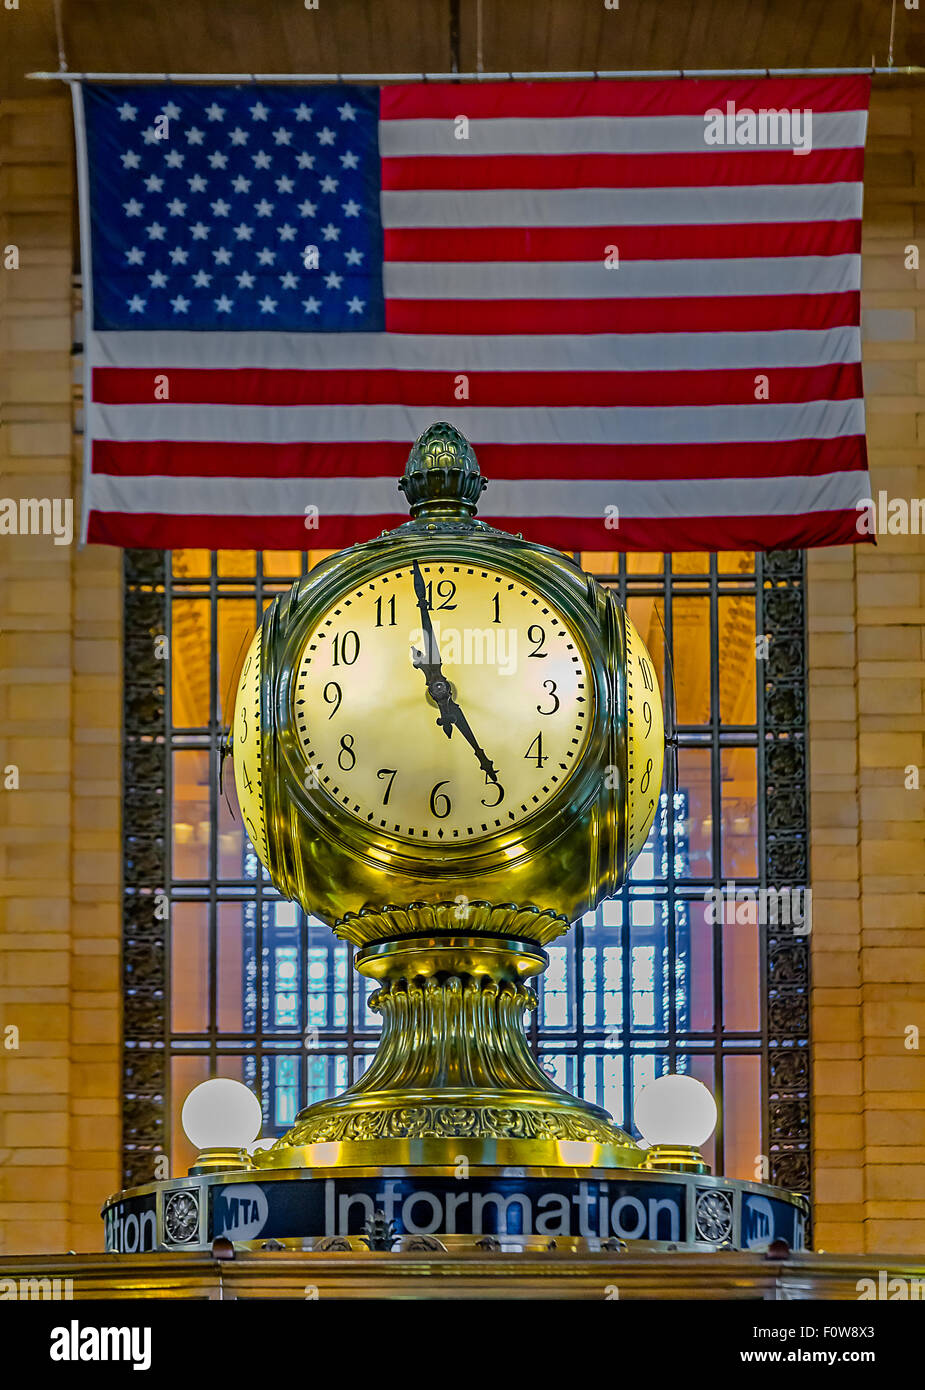 Réveil de l'opale au kiosque d'information dans l'aérogare principale au Grand Central Terminal, avec le drapeau américain en arrière-plan. Banque D'Images